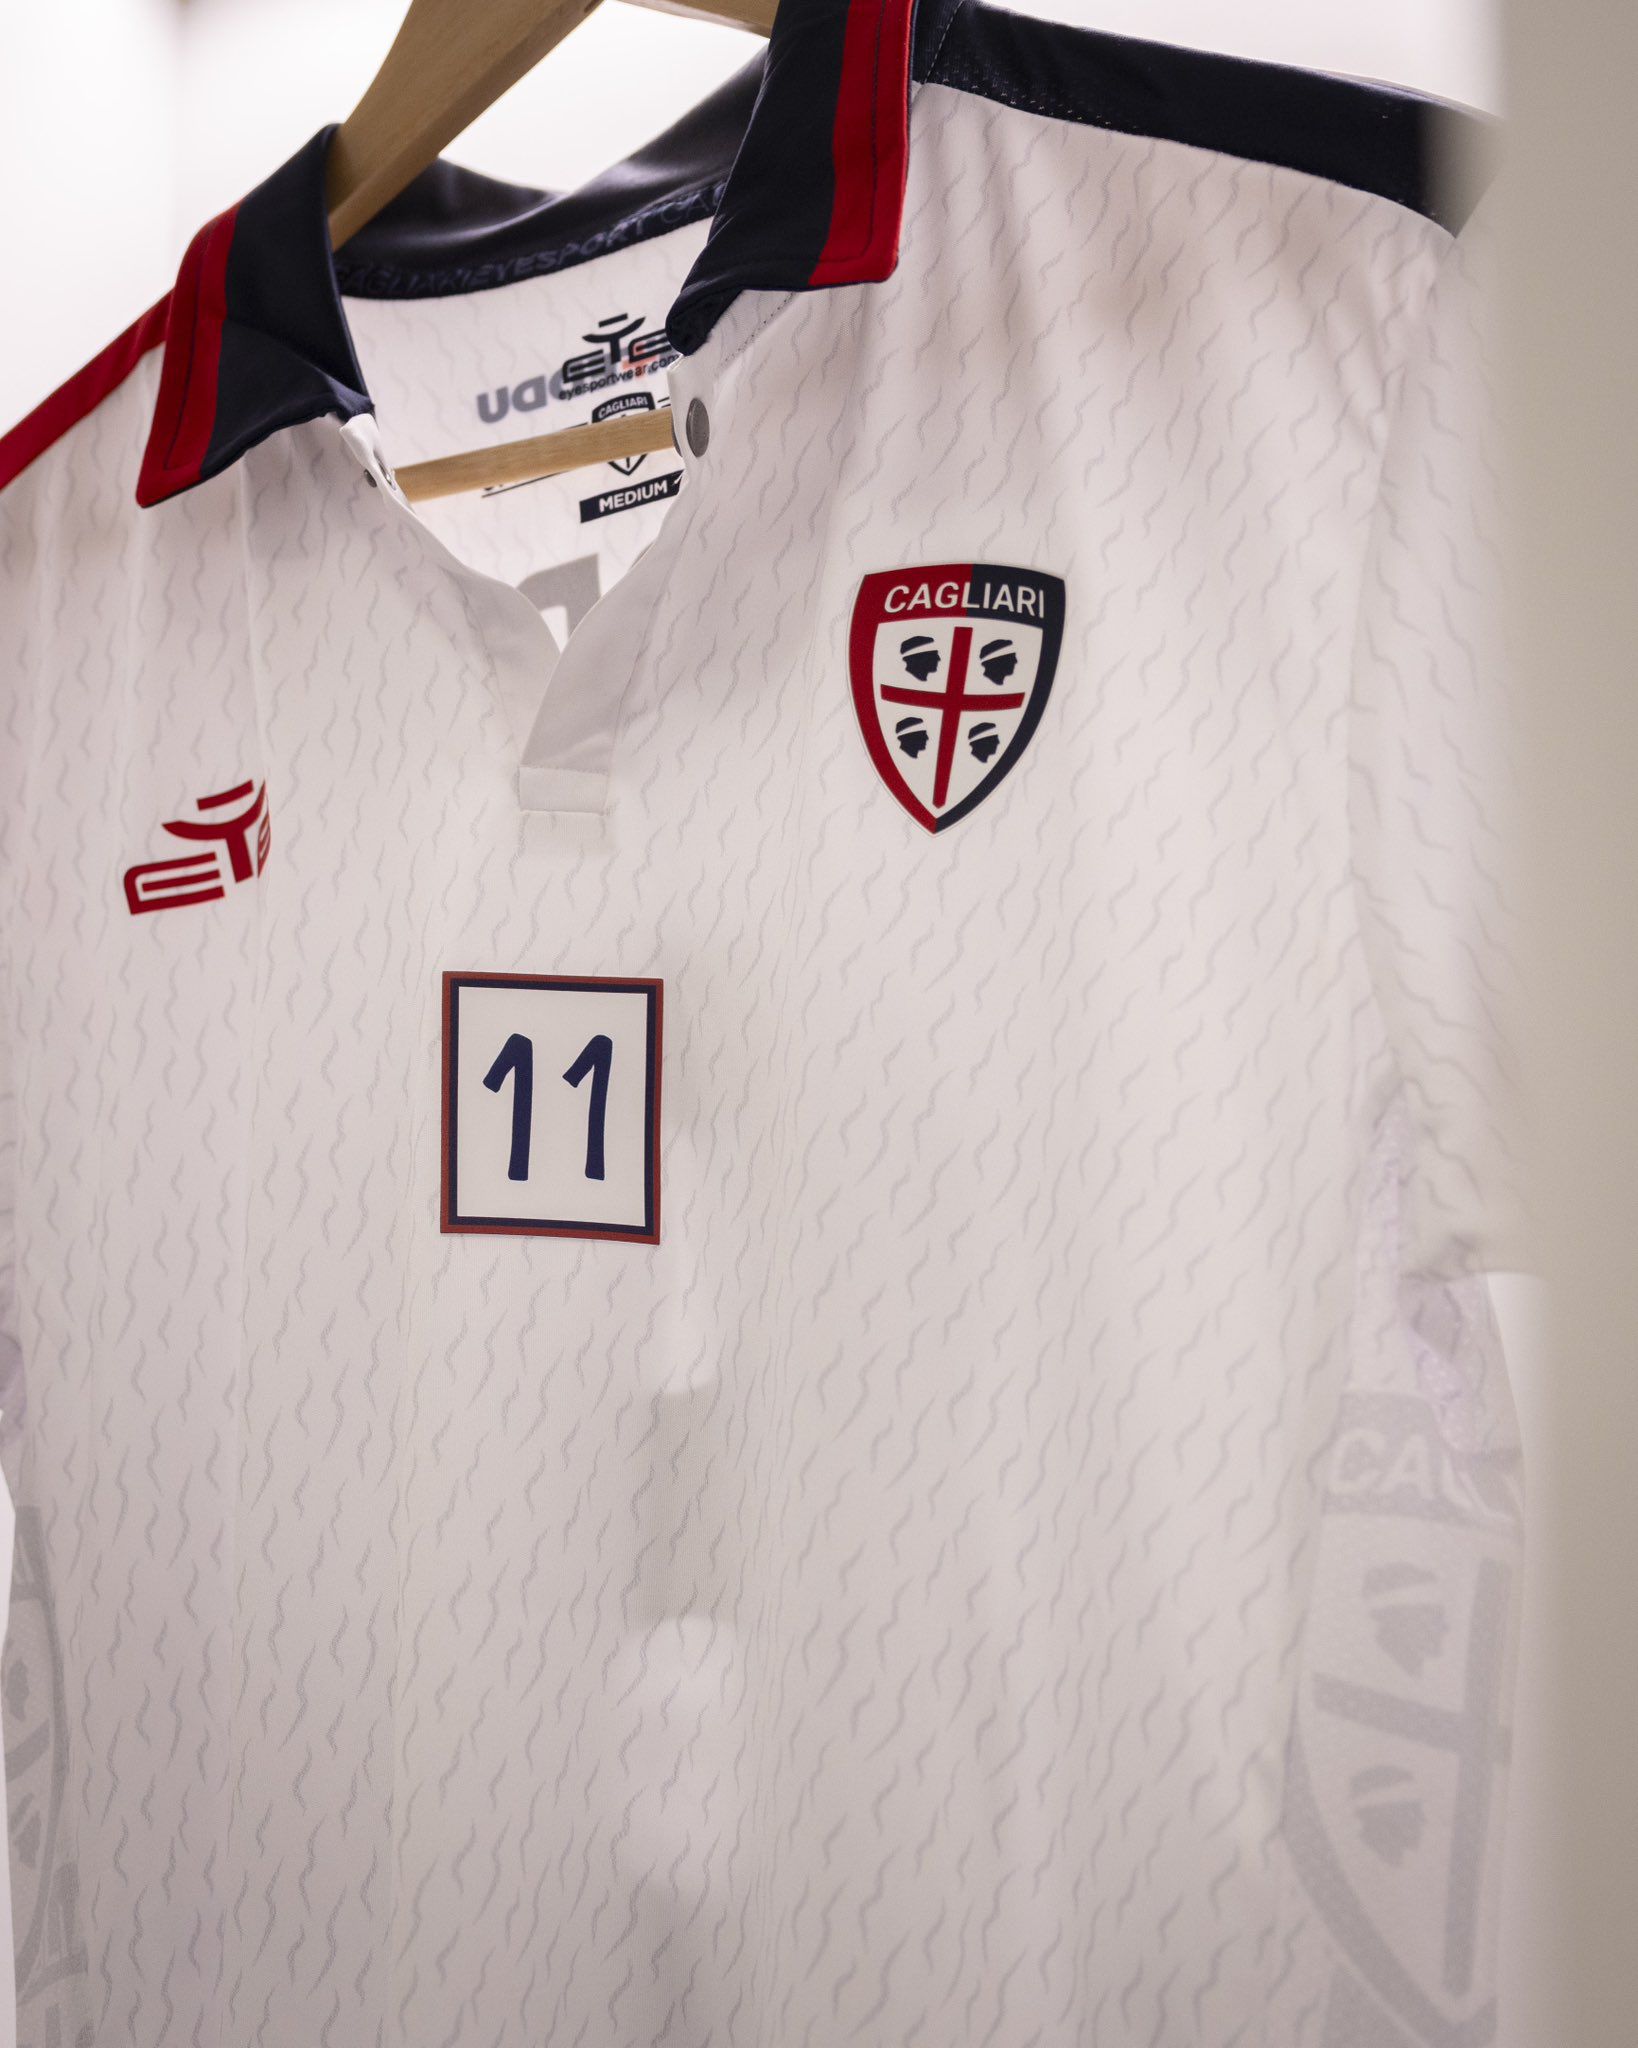 Los jugadores de Cagliari utilizarán una camiseta con el número 11 en el pecho en homenaje a 'Gigi' Riva.